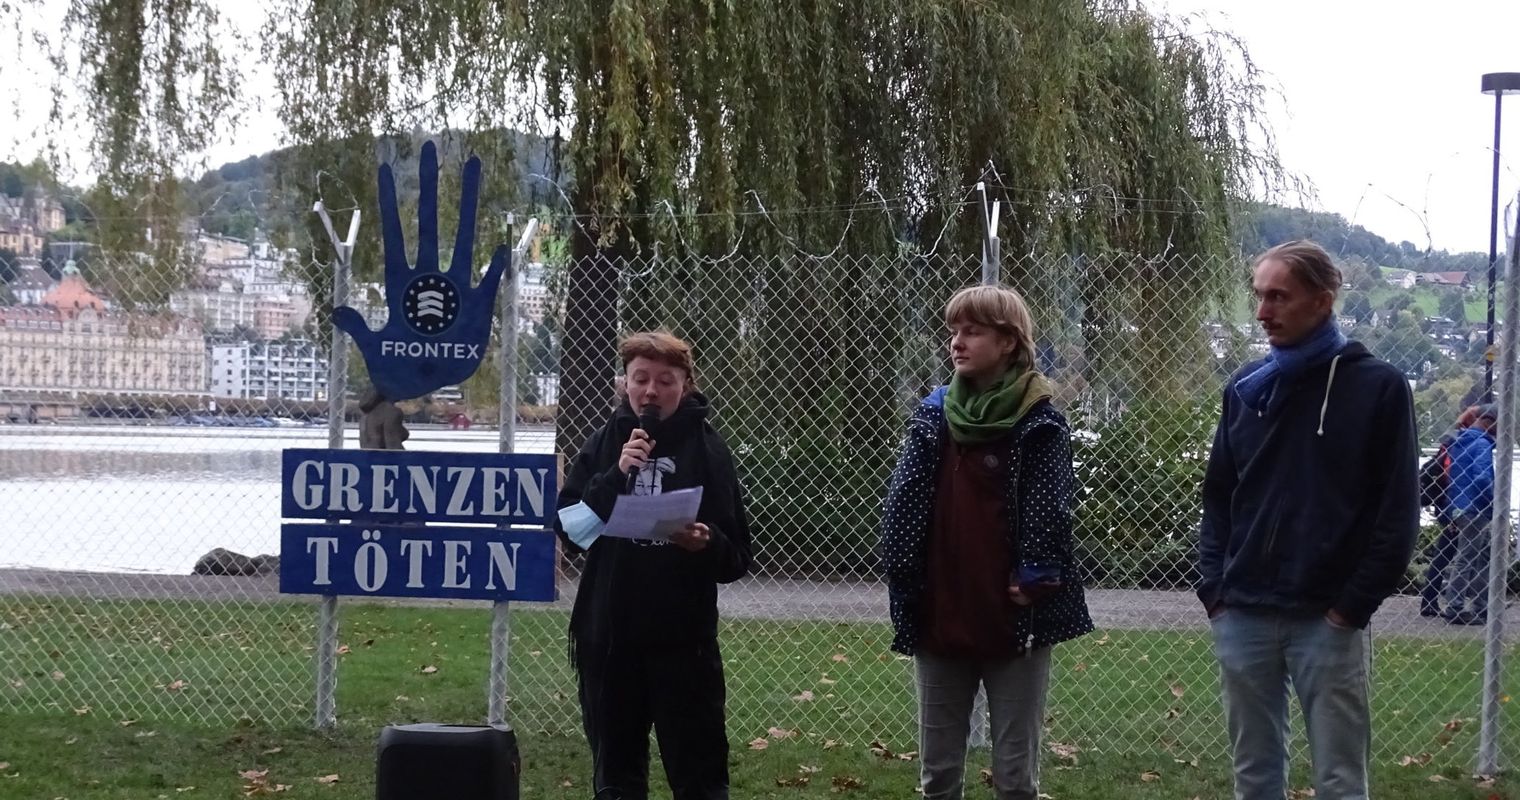 «Grenzen töten»: In Luzern werden Grenzregimes kritisiert